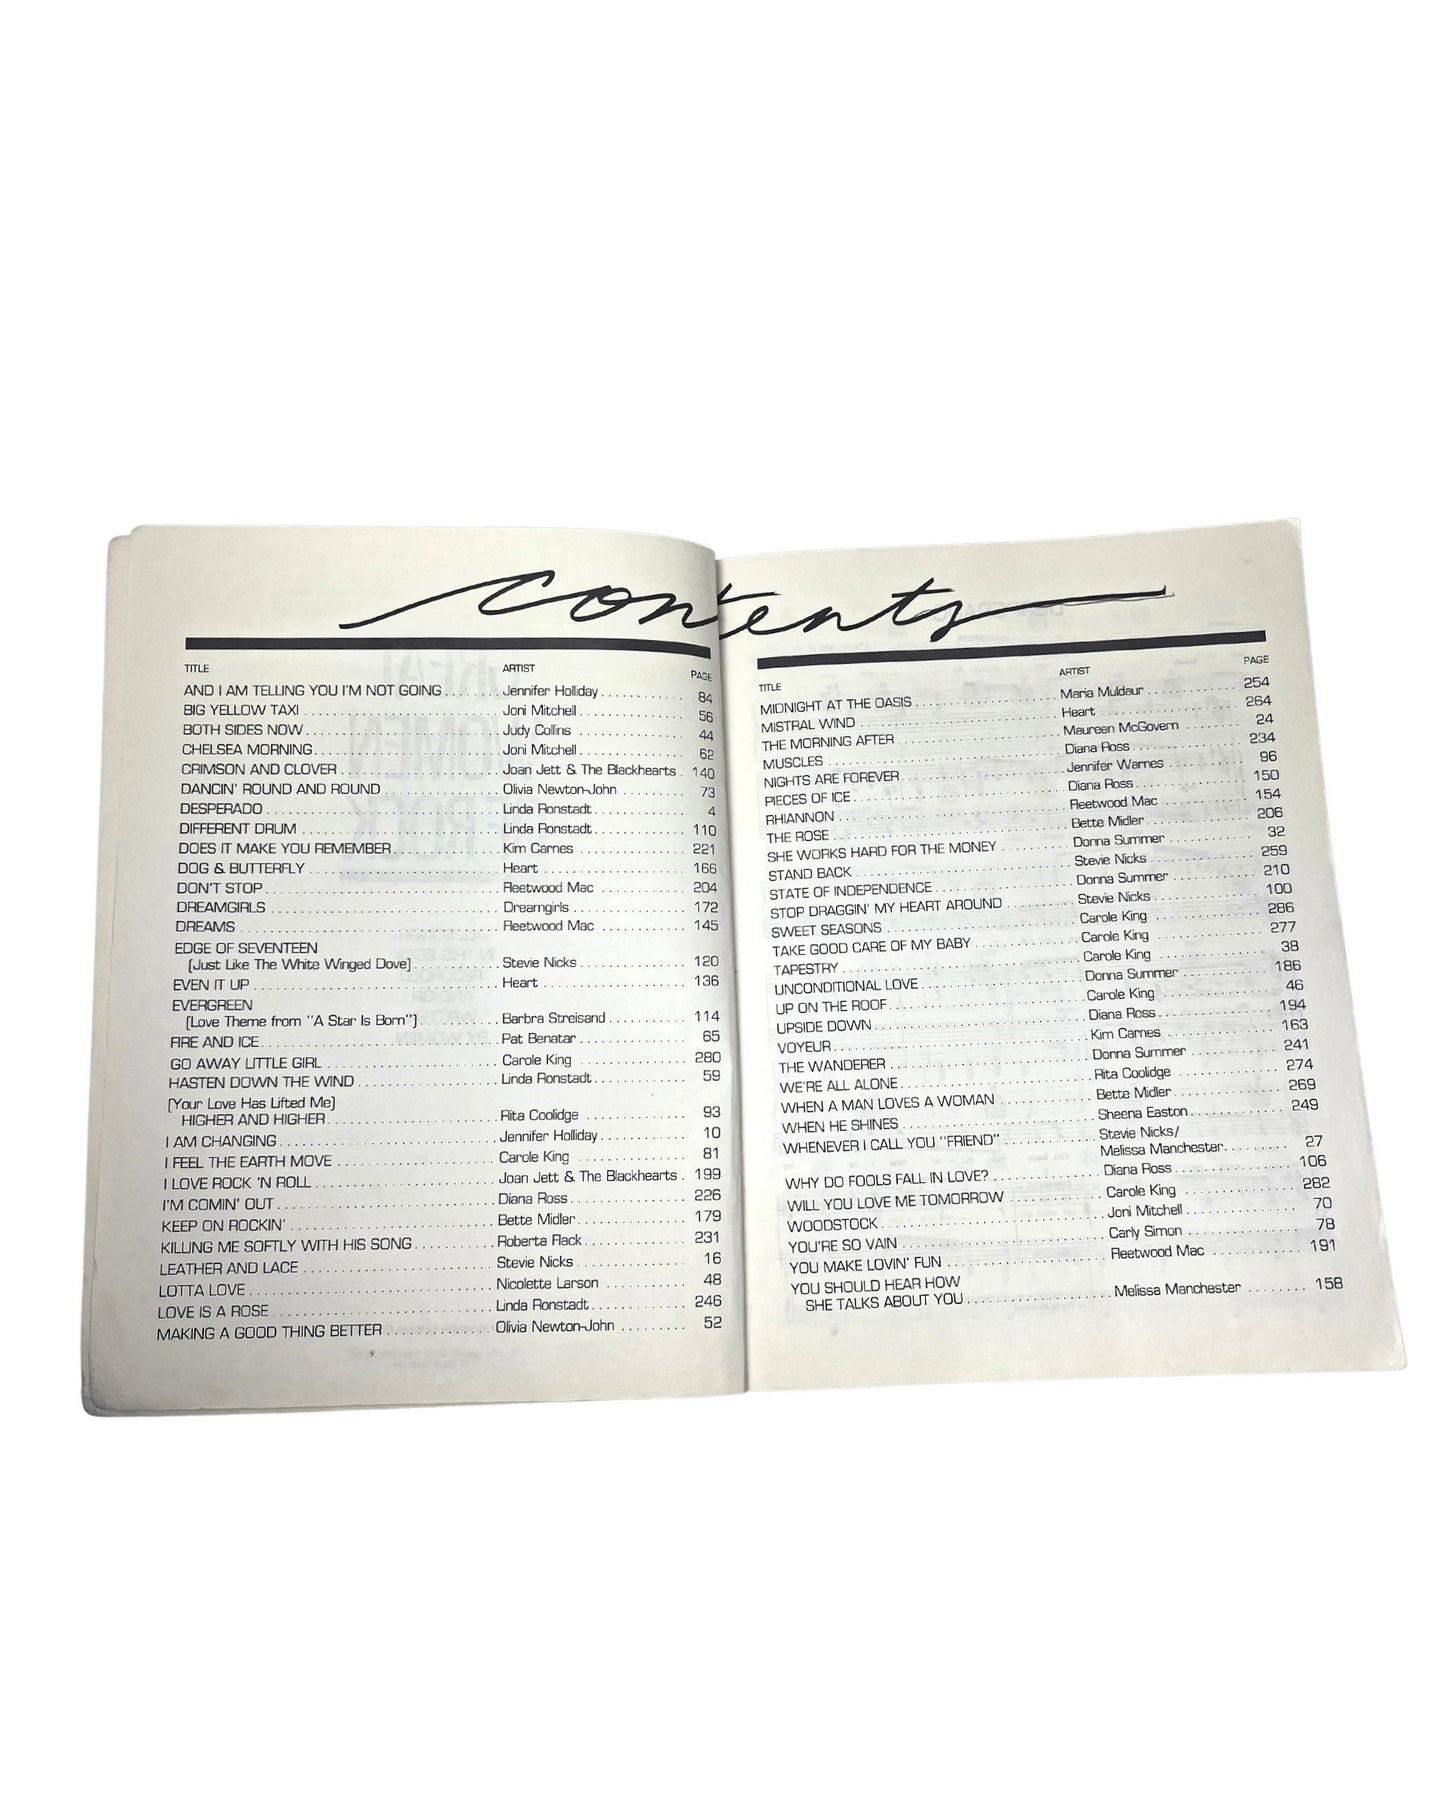 1984 Great Women of Rock Sheet Music Book Stevie Nicks Diana Ross Cyndi Lauper